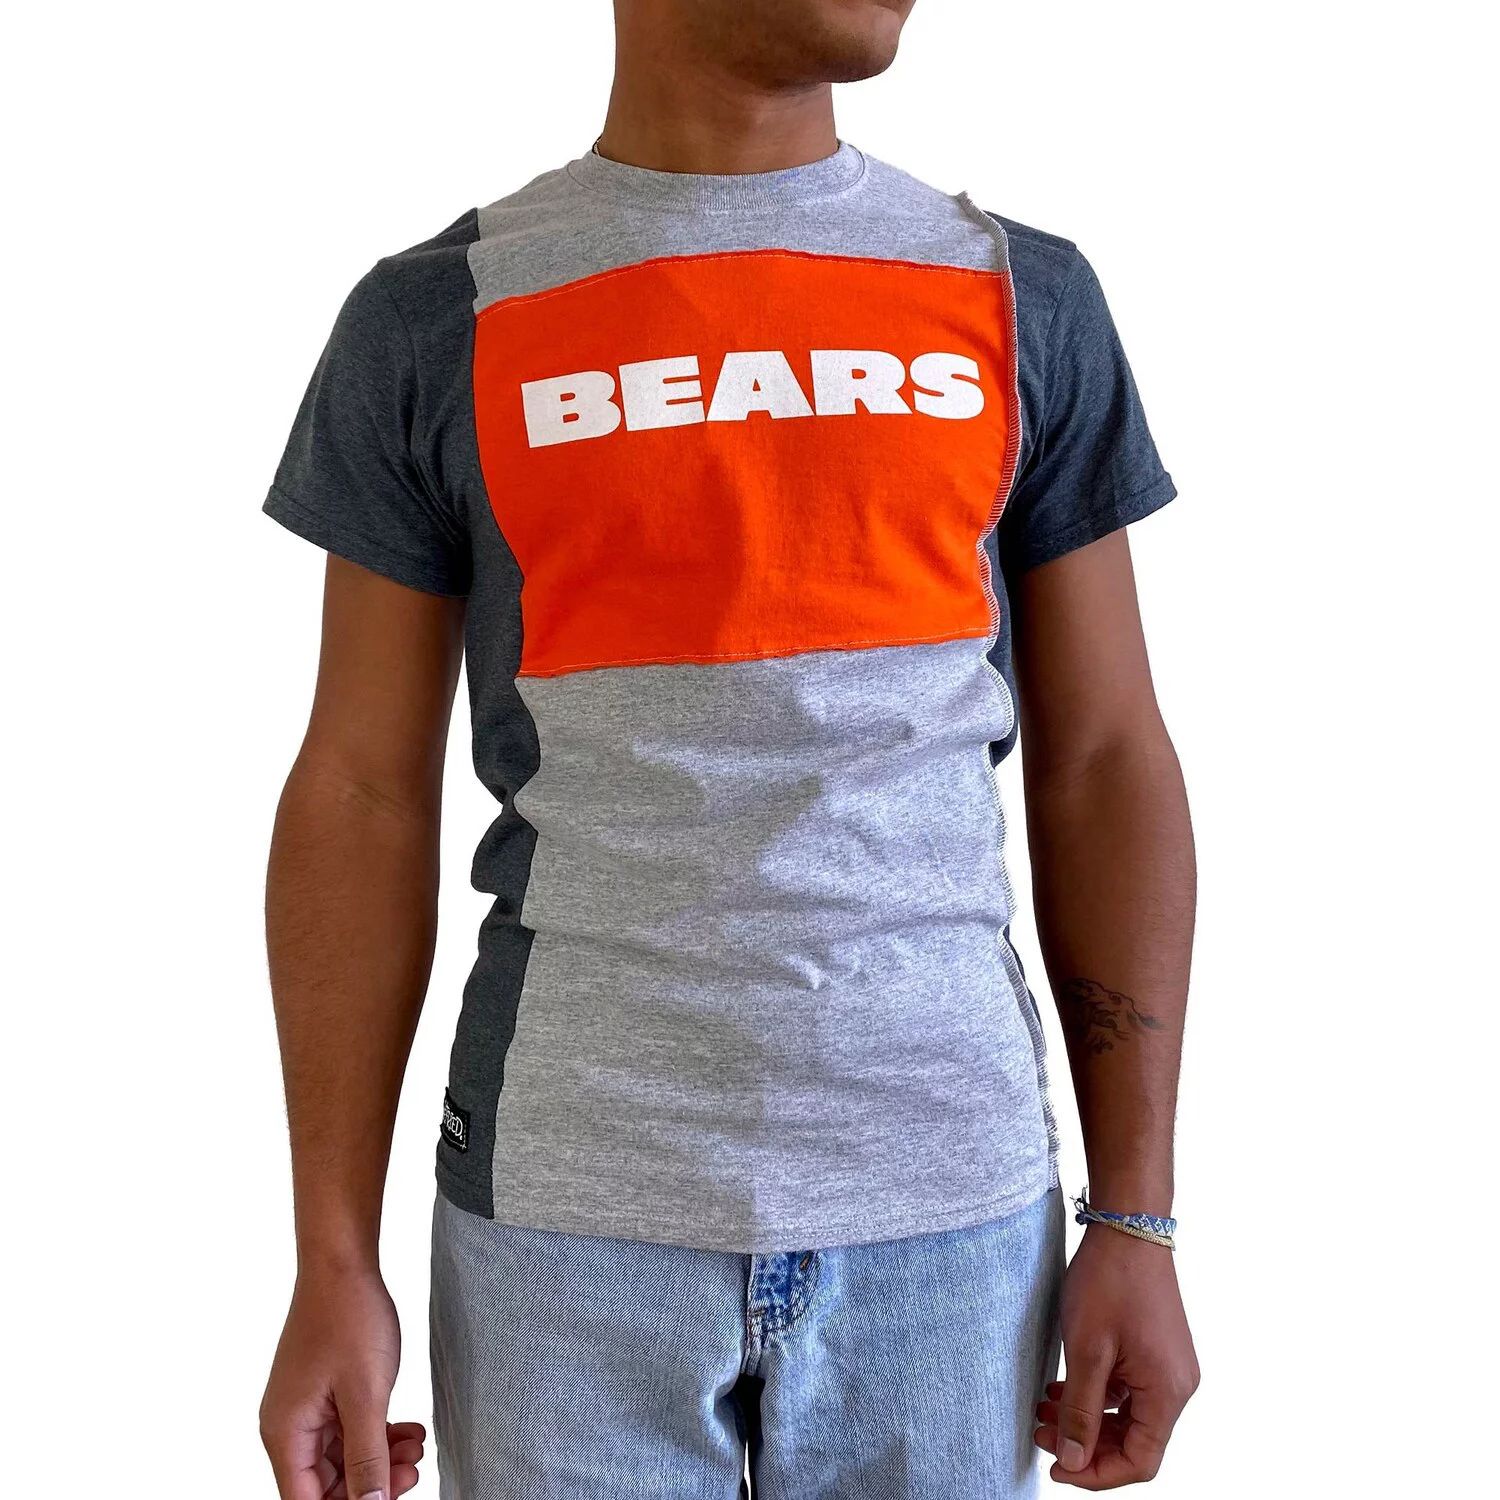 Мужская футболка Refried Apparel серого цвета с разрезом Chicago Bears мужская футболка с разрезом san francisco 49ers черного и серого цвета с меланжевым покрытием refried apparel мульти